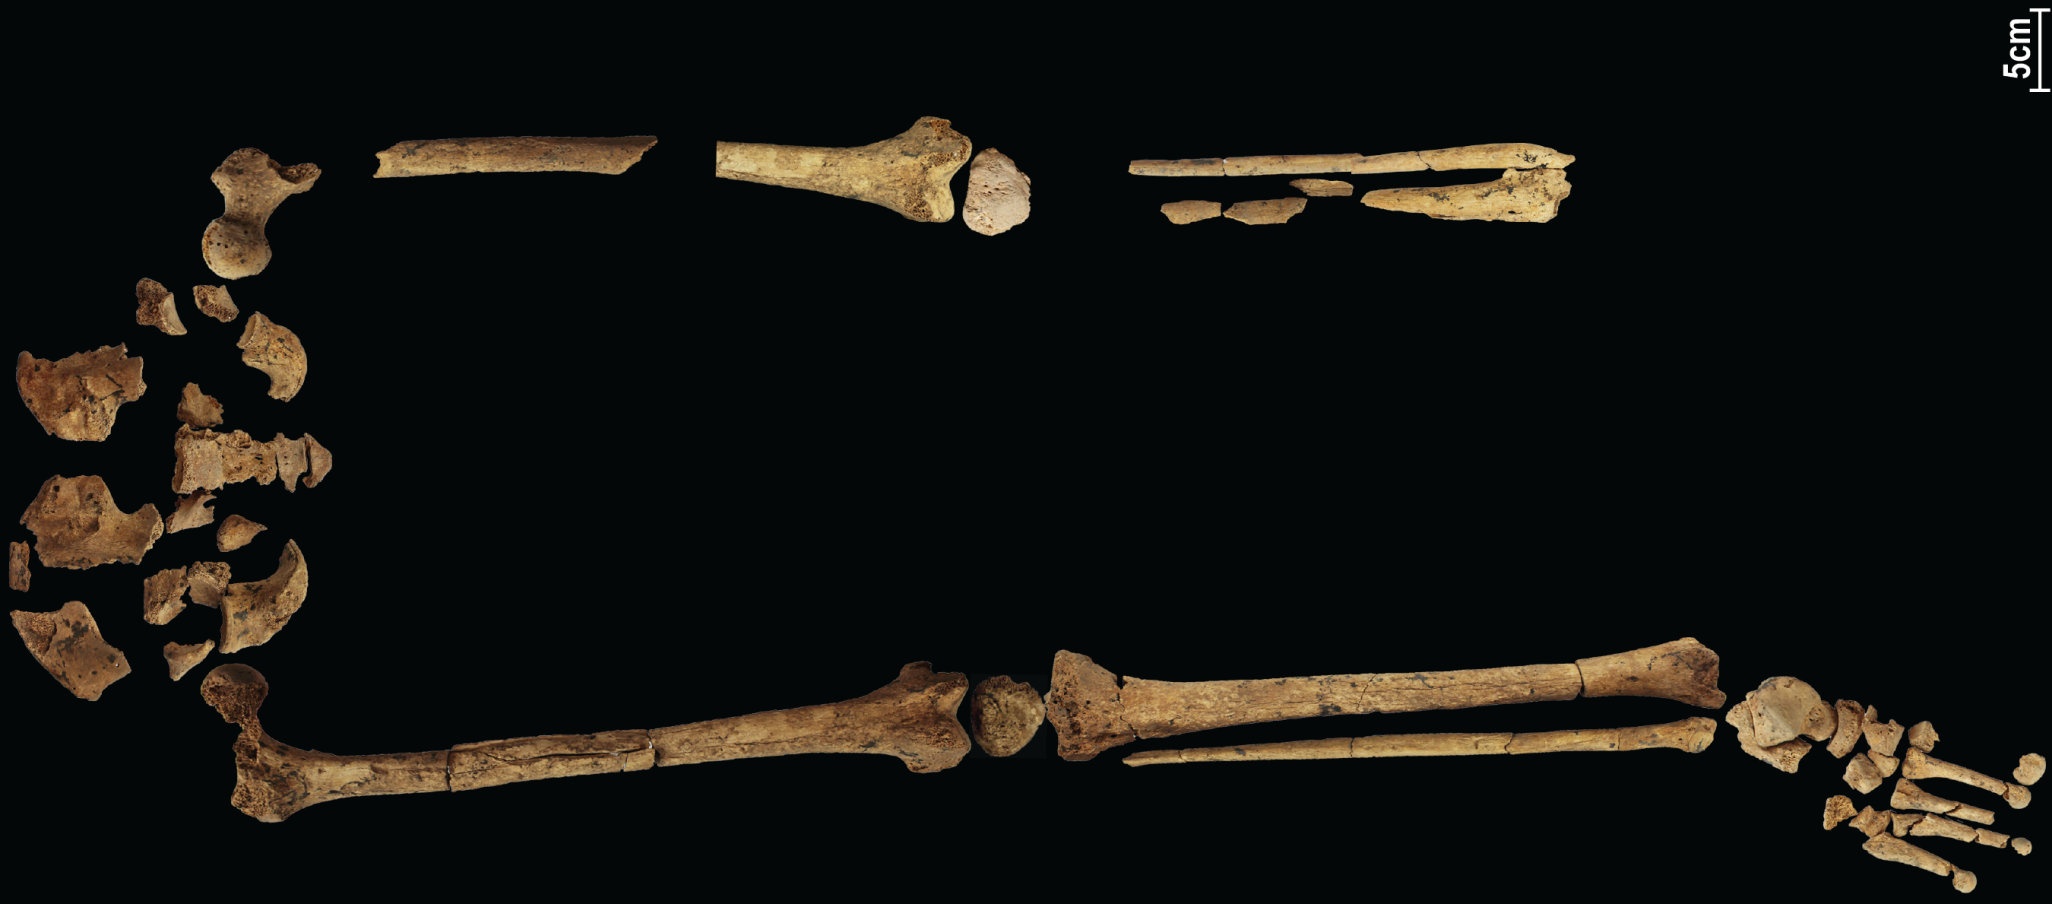 31,000 წლის წინანდელ ჩონჩხს, რომელიც გვიჩვენებს ადრეულ რთულ ოპერაციას, შეუძლია გადაწეროს ისტორია! 4